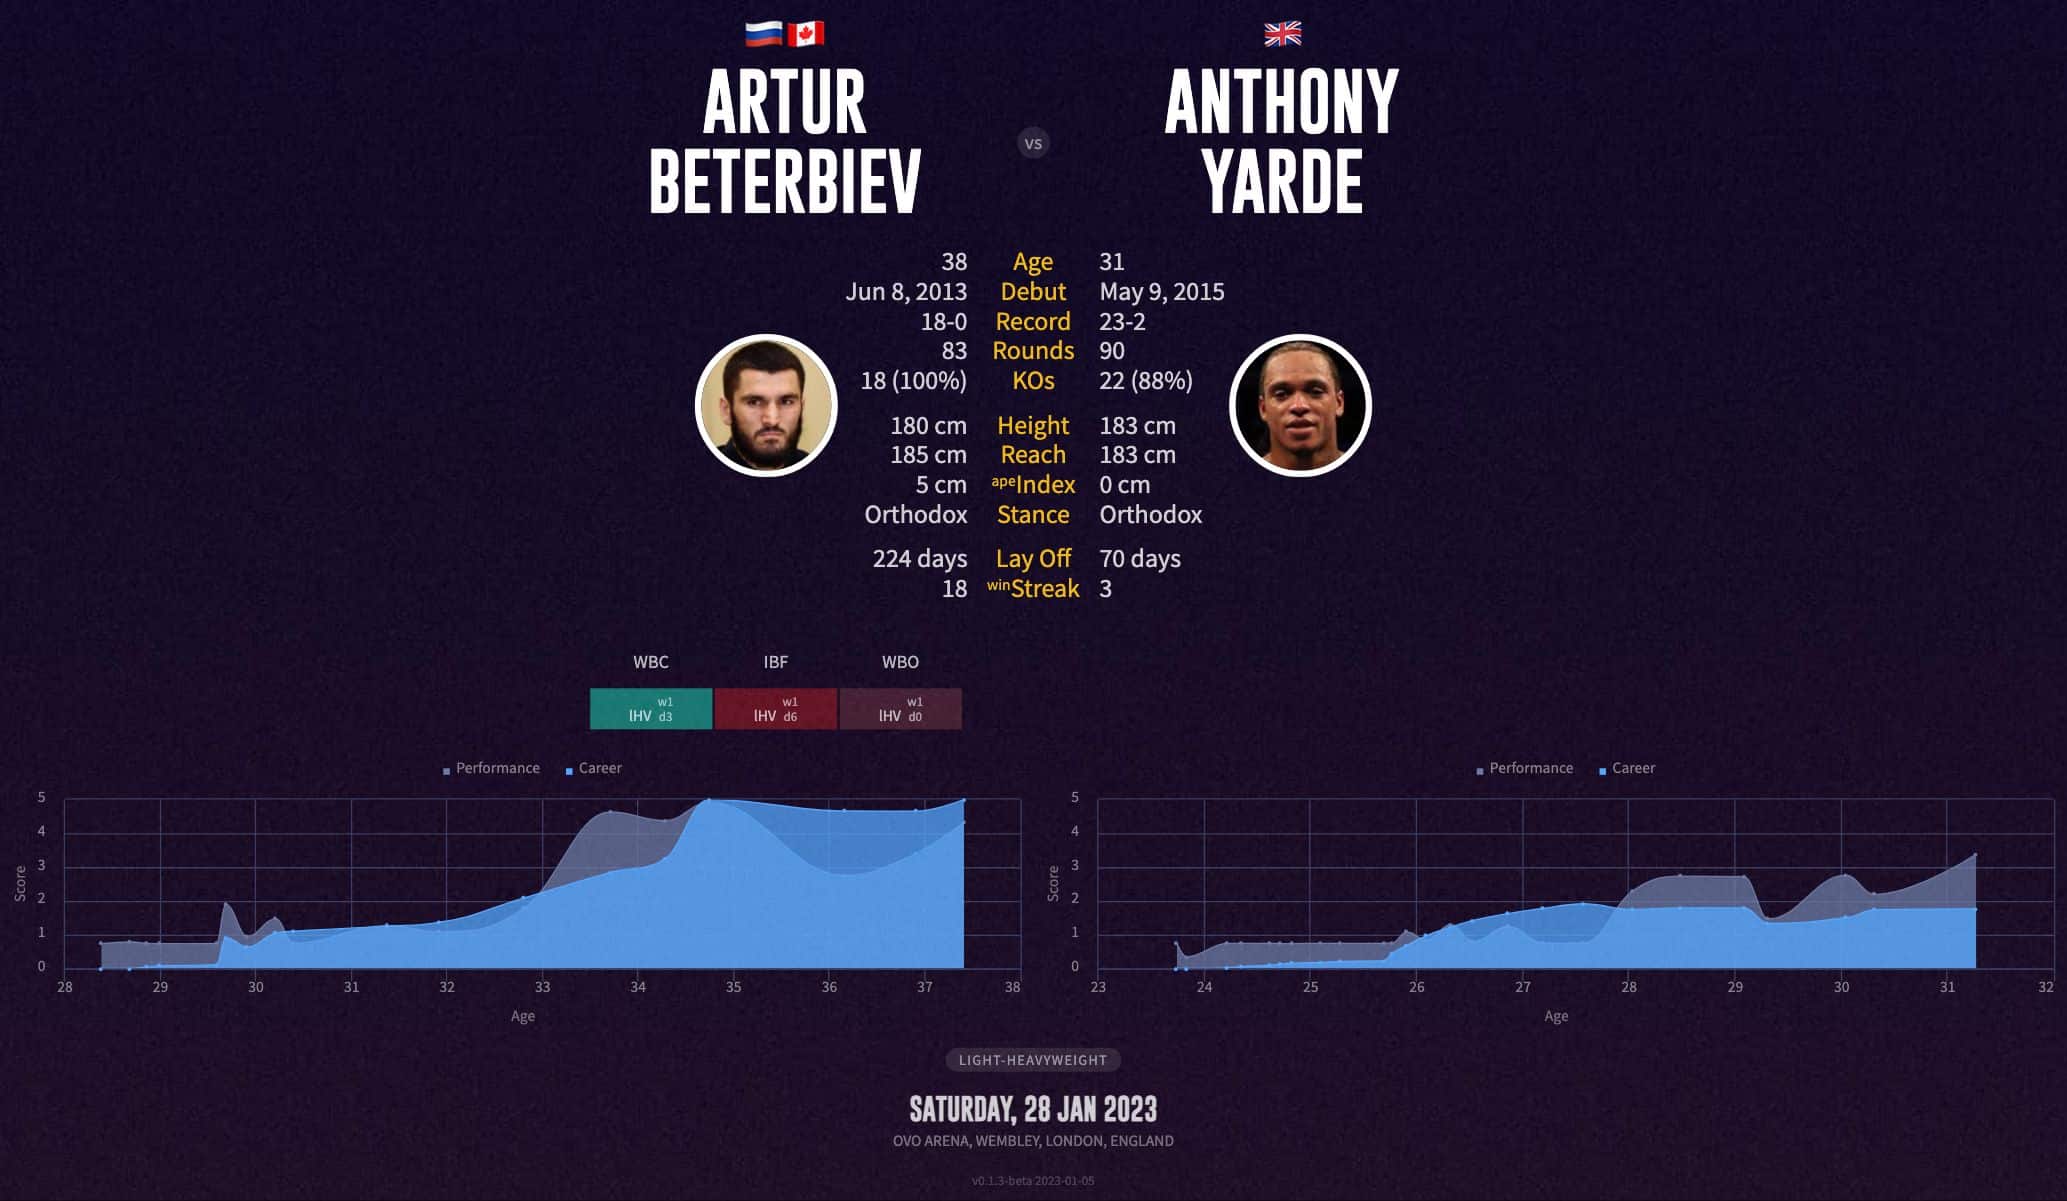 Artur Beterbiev's next fight